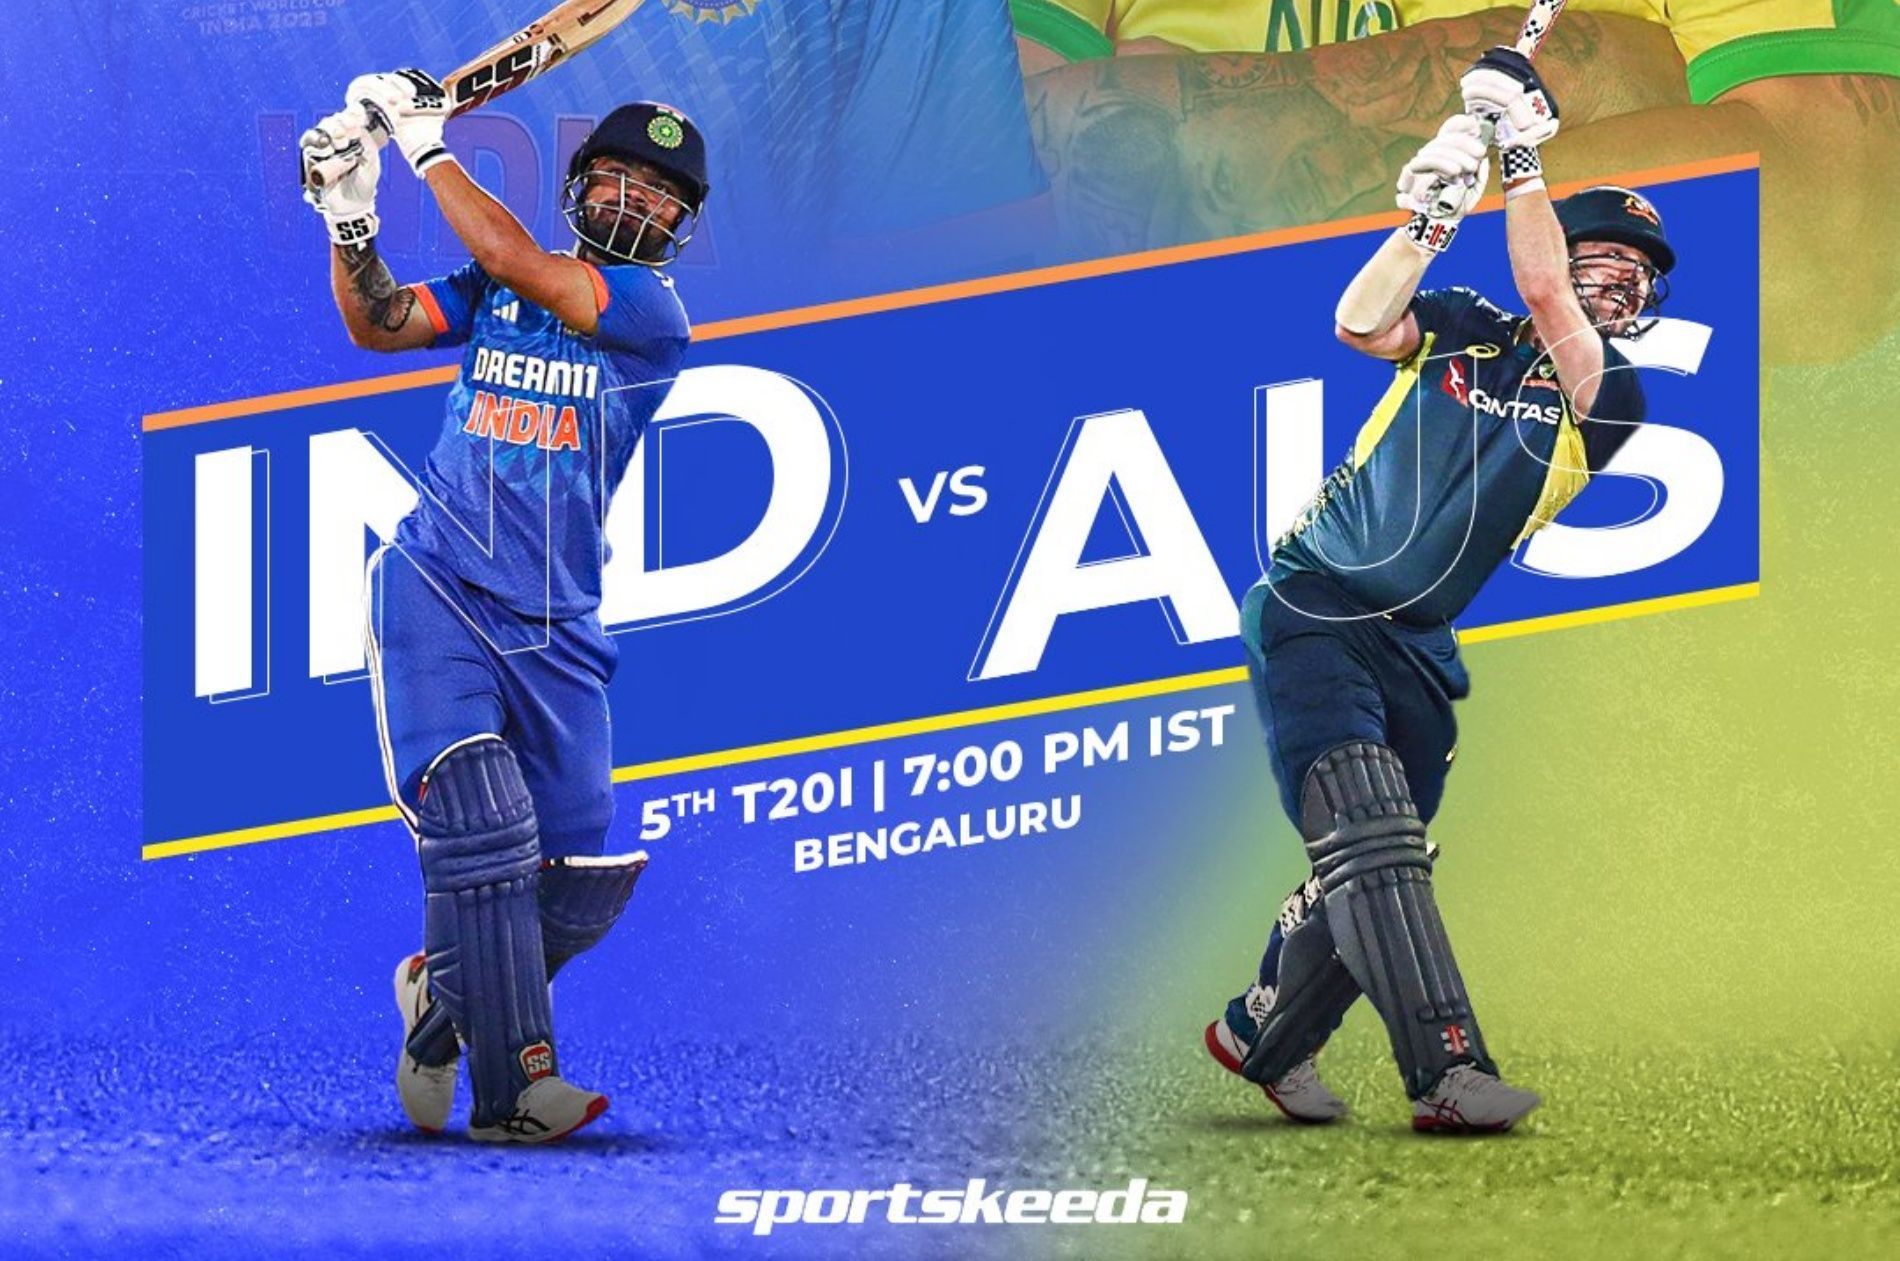 India vs Australia 5th T20I